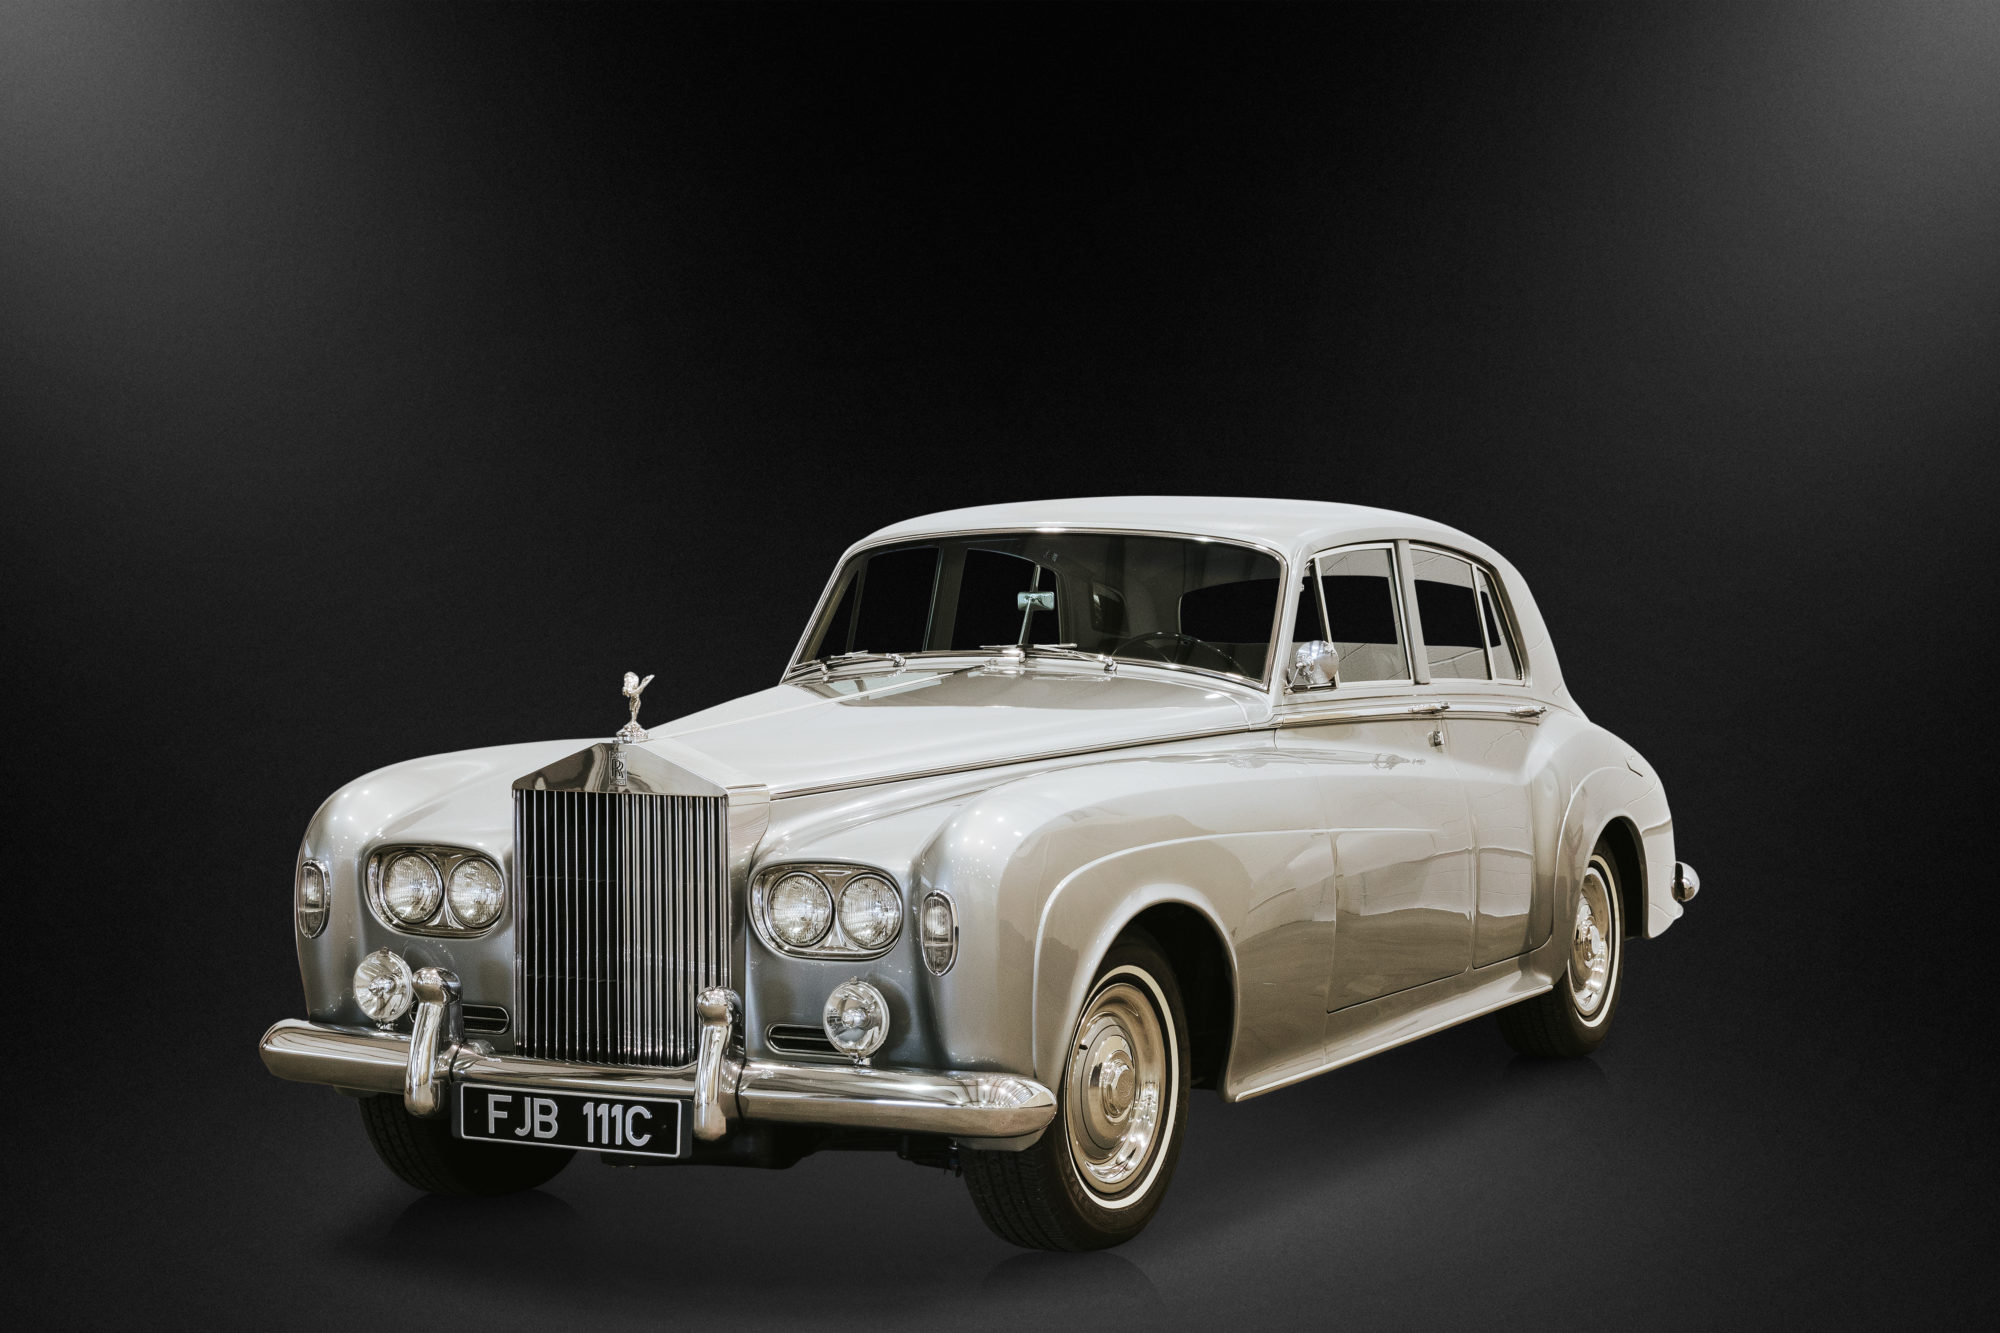 1965 Rolls Royce Silver Cloud III *Sold £18,000* - Evoke Classic Cars